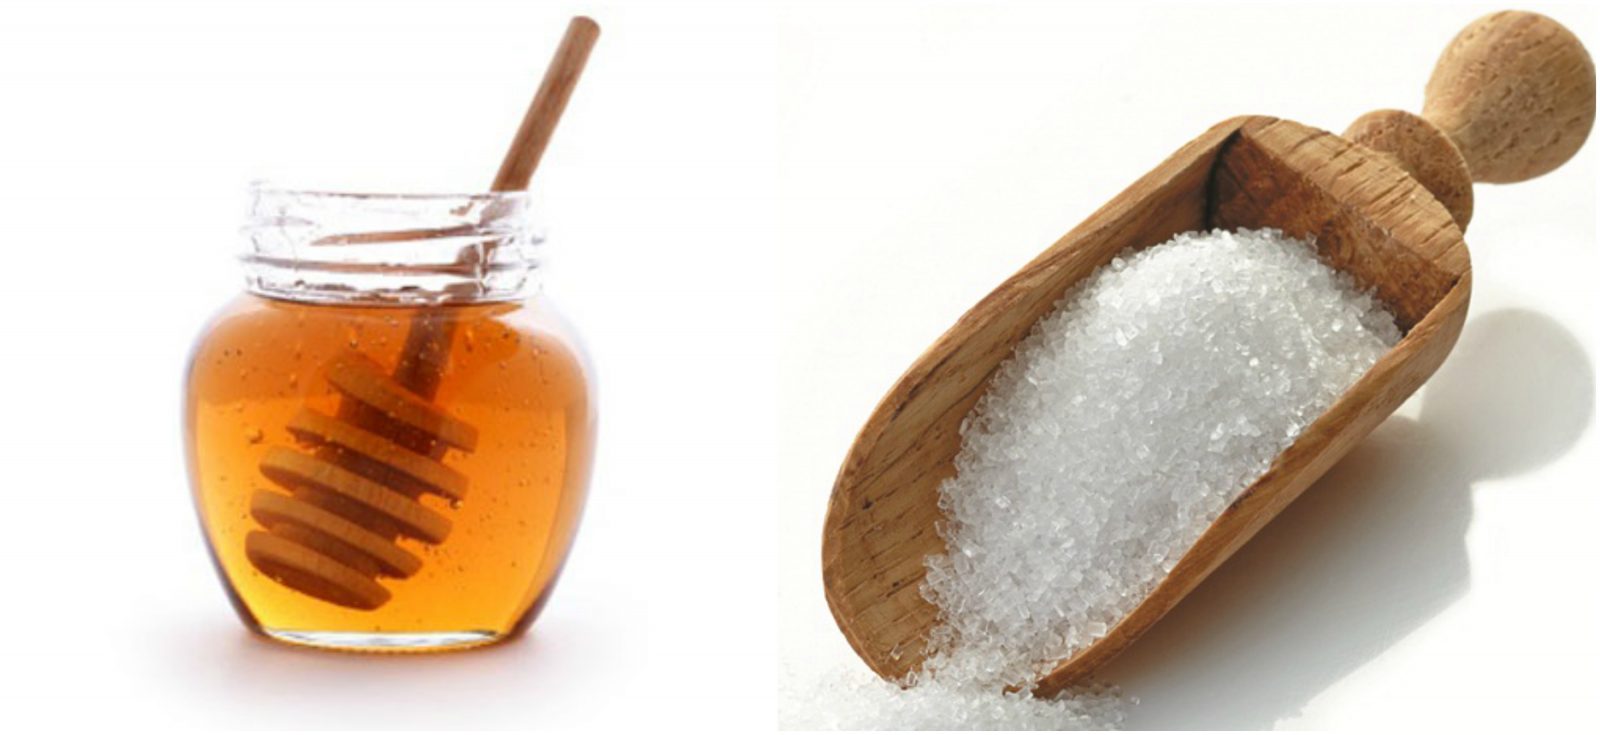 Chăm sóc da tay khô bằng mặt nạ dưỡng chất mật ong và đường giúp làn da sáng mịn